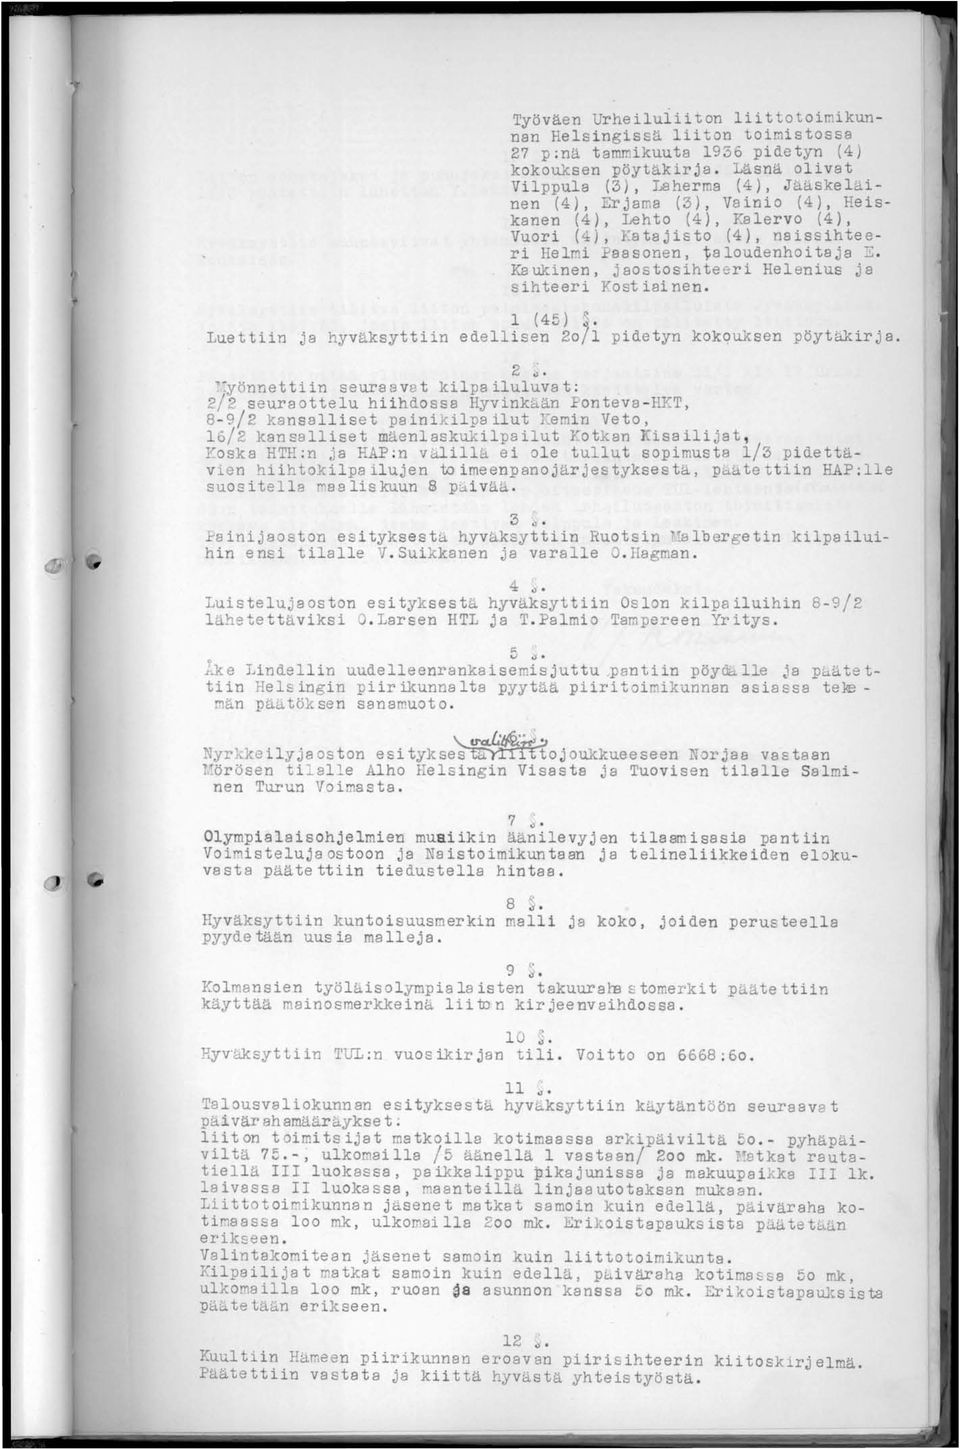 Kaukinen, jaostosihteeri Helenius ja sihteeri Yost iai nen. 1 (45) Luettiin ja hyväksyttiin edellisen 20/1 pidetyn kokquksen pöytäkirja. 2 J.